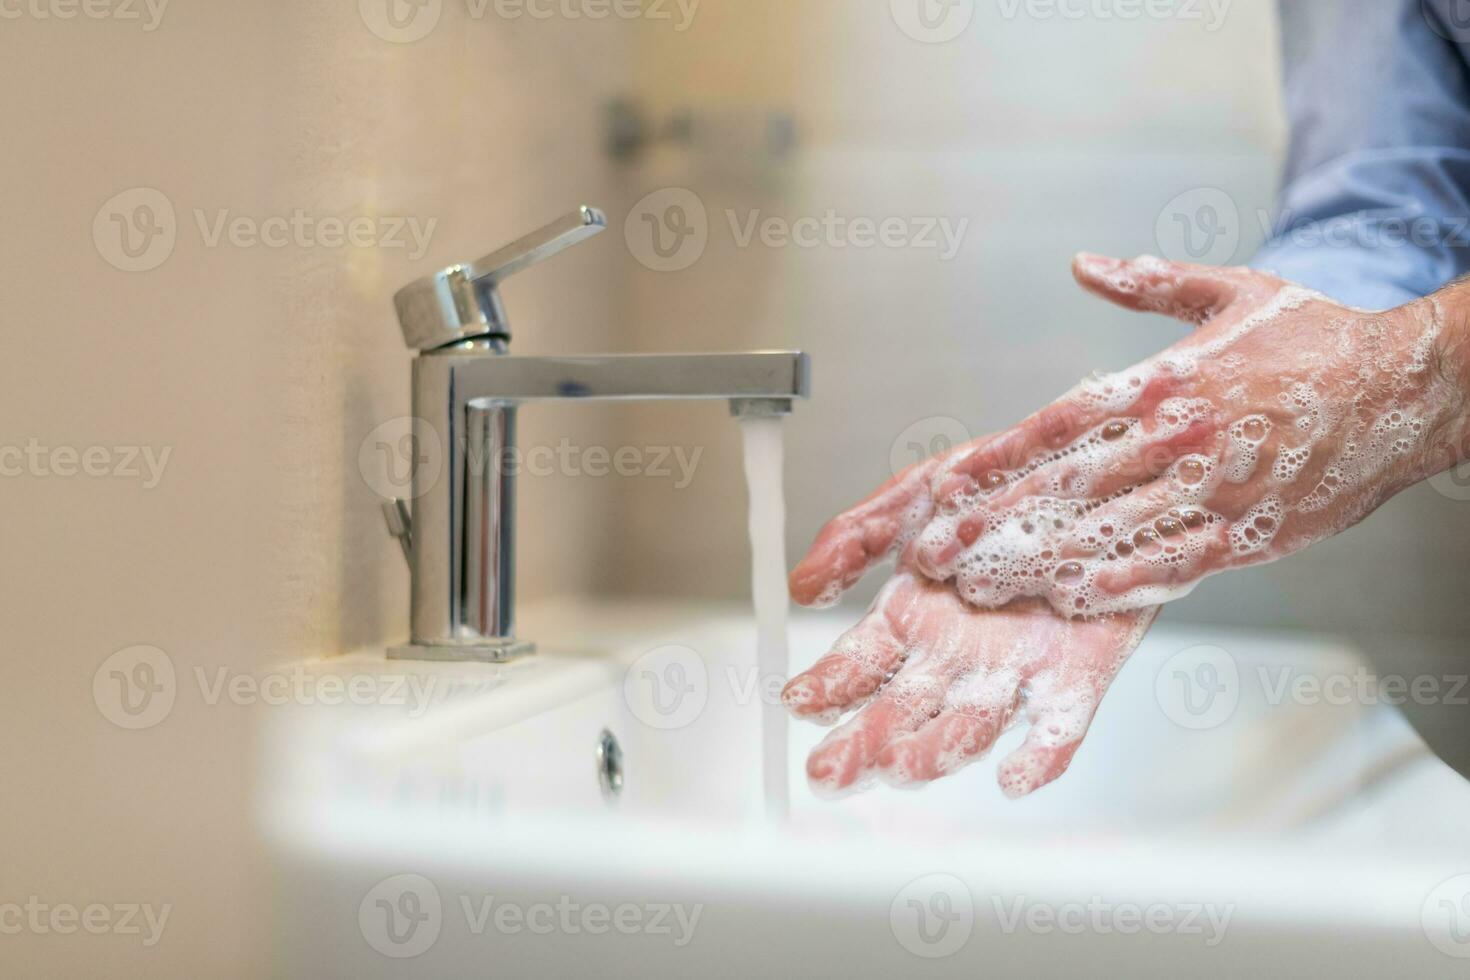 man använder sig av tvål och tvättning händer under de vatten knacka. hygien begrepp hand närbild detalj. foto